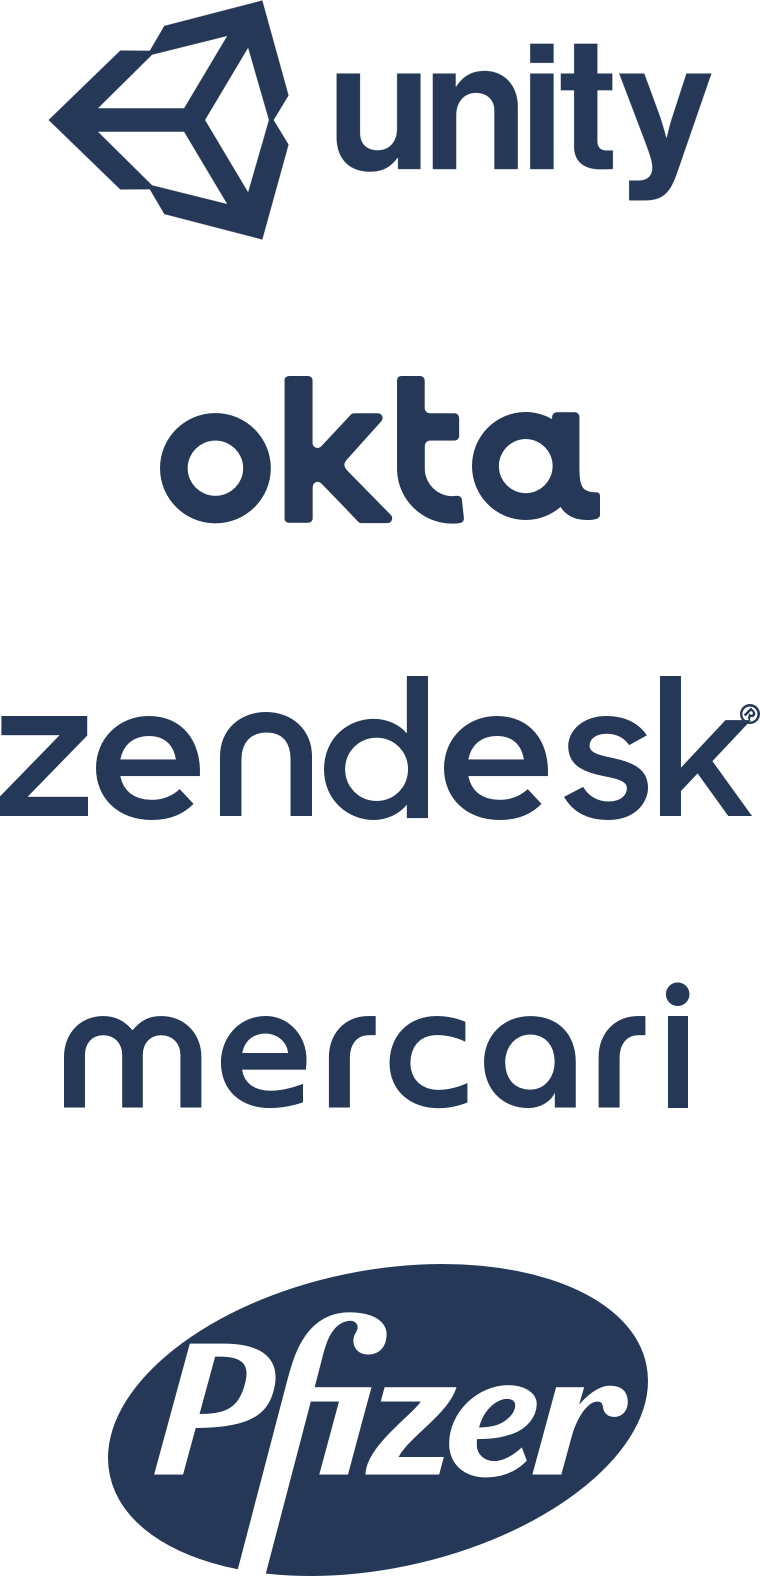 Unity、Okta、Zendesk、Mercari、Pfizer のロゴ